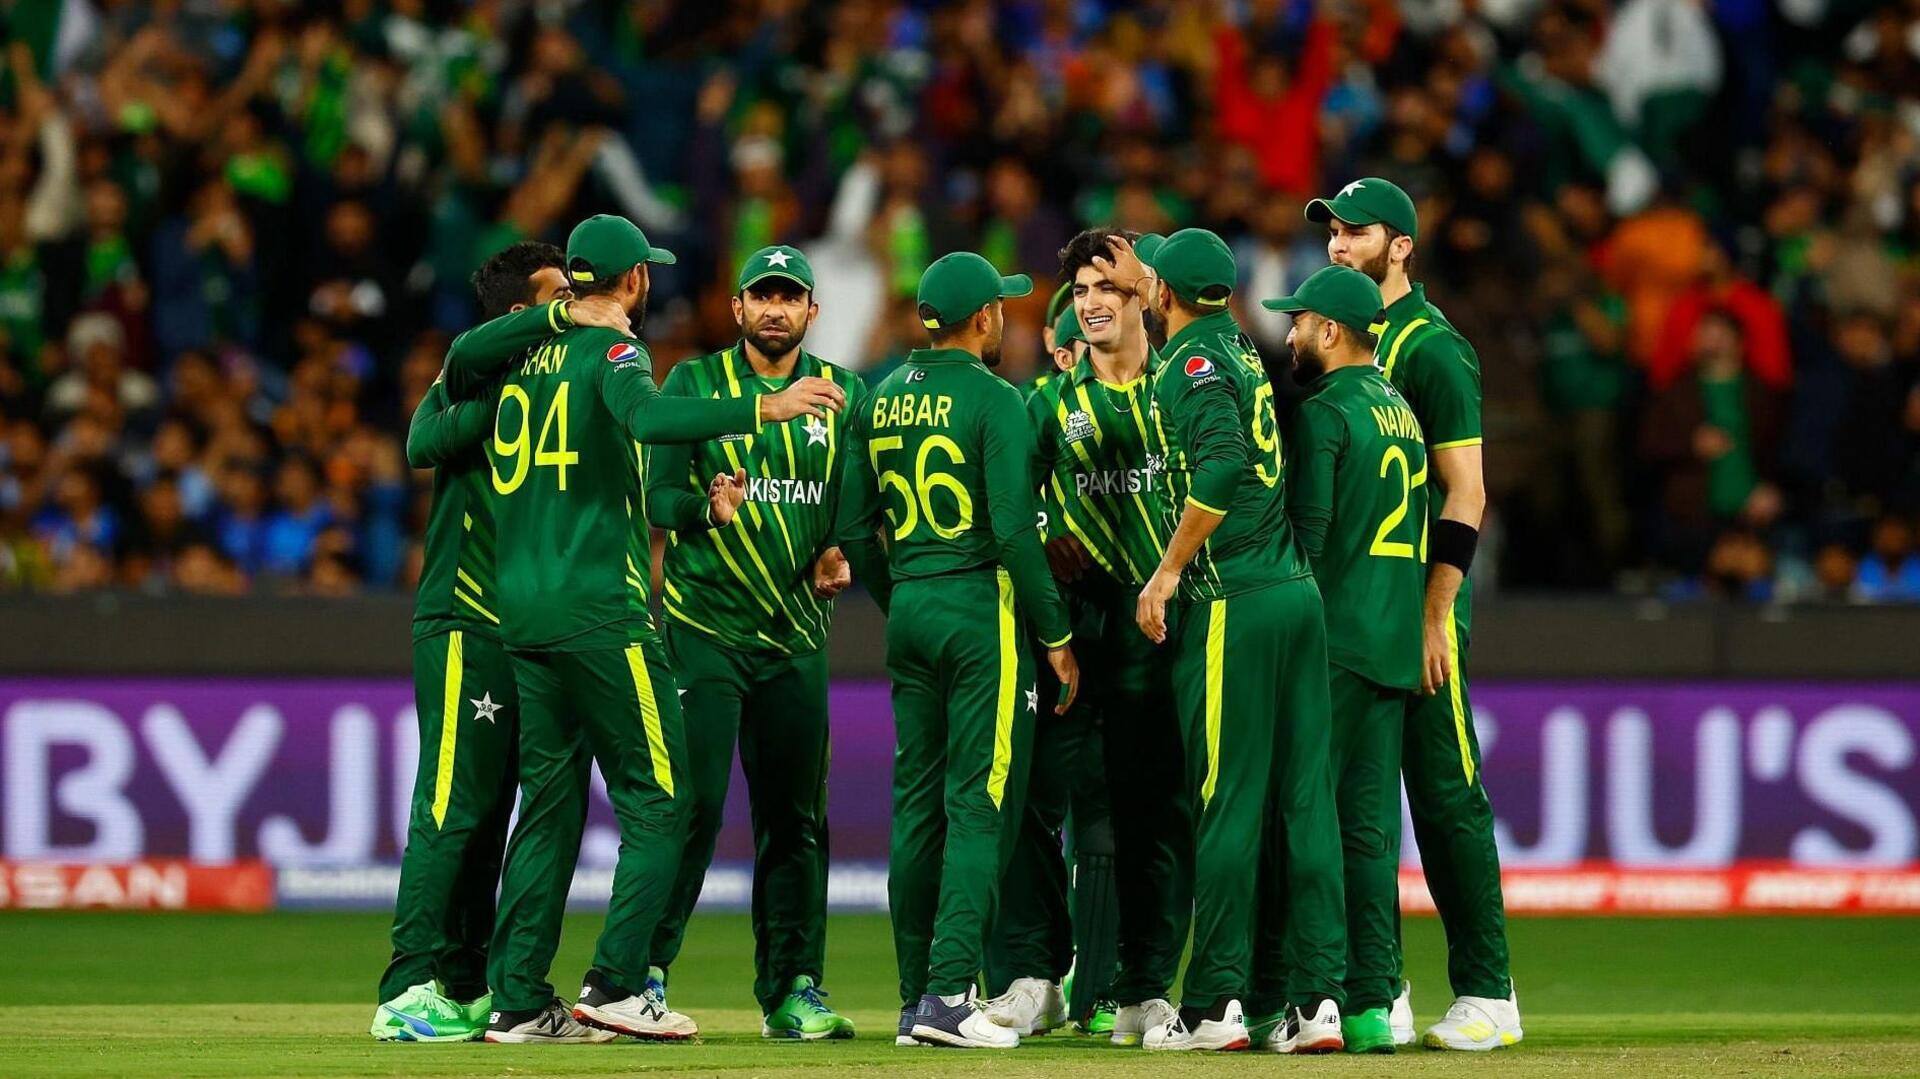 बिलावल भुट्टो के नेतृत्व वाली समिति लेगी विश्व कप में पाकिस्तान की भागीदारी पर फैसला- रिपोर्ट 